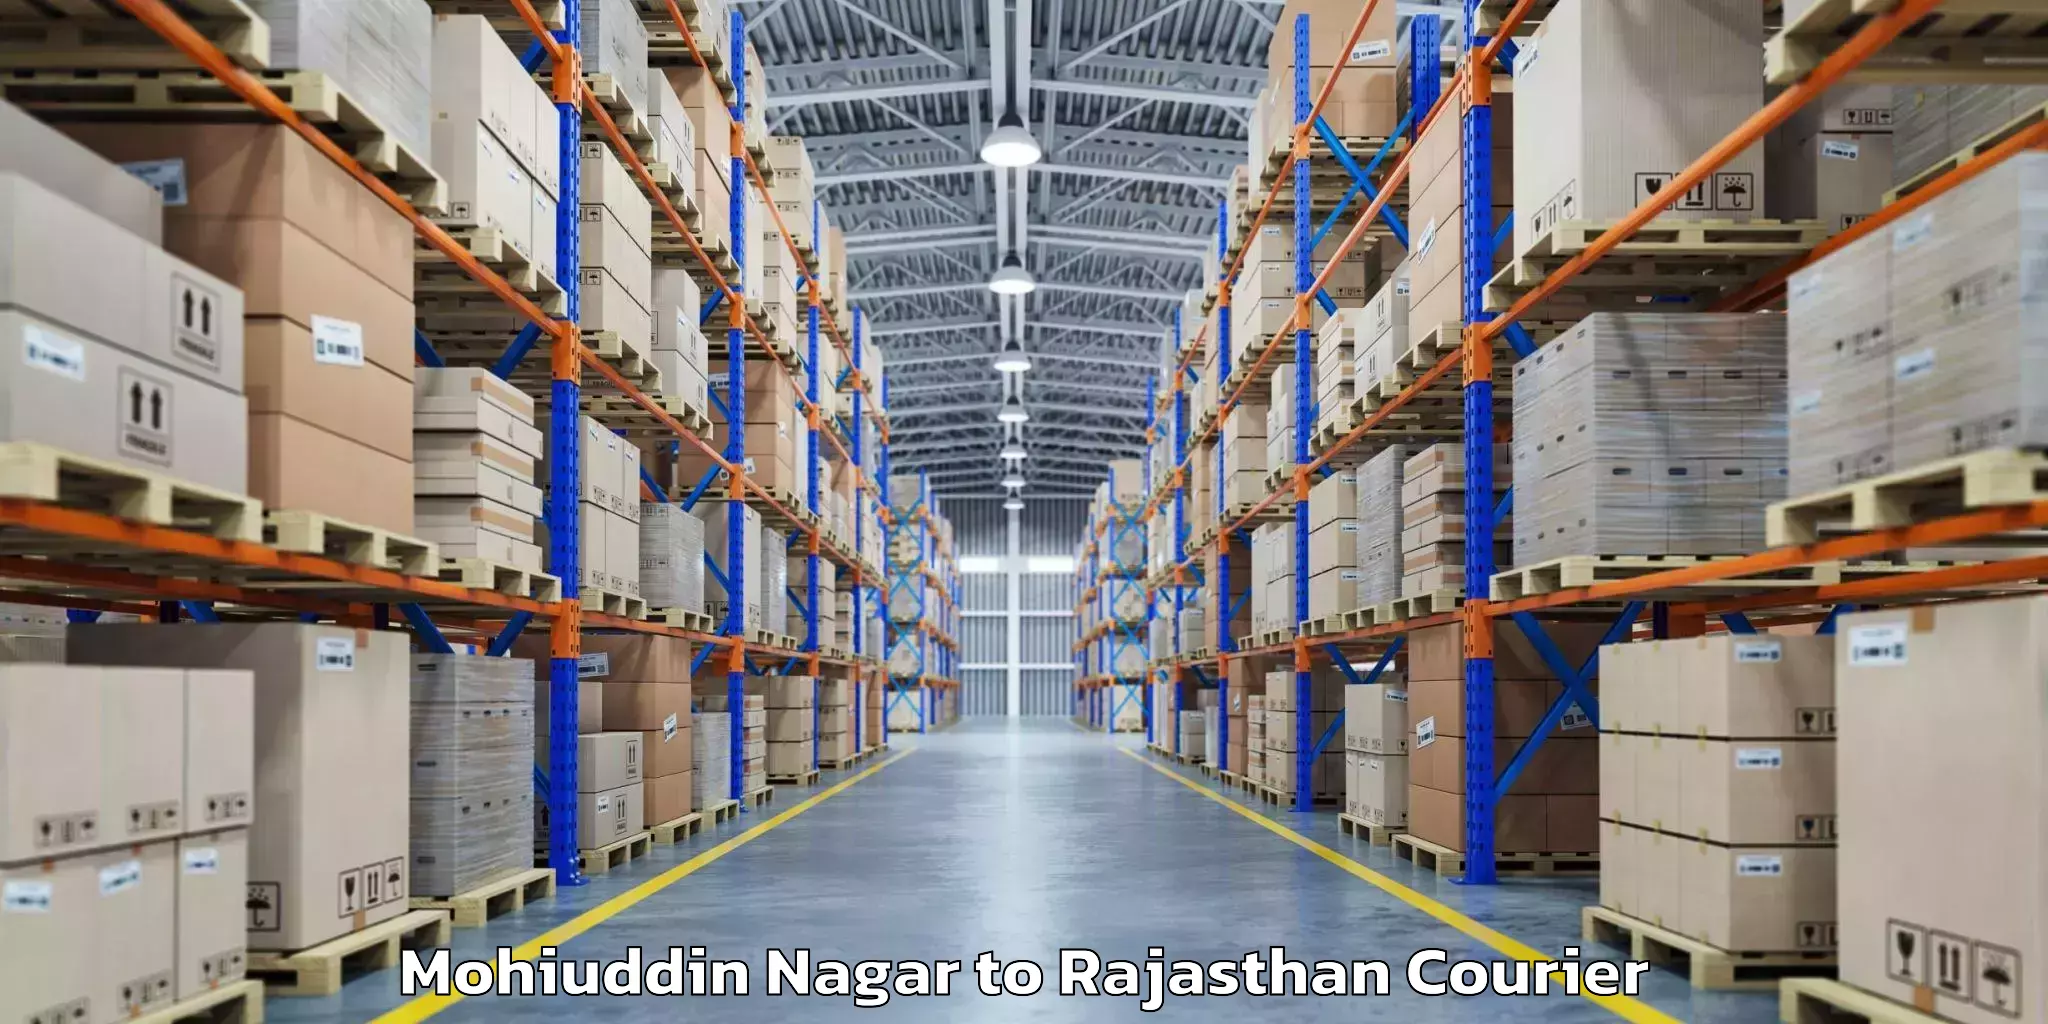 Baggage transport management Mohiuddin Nagar to Rajasthan